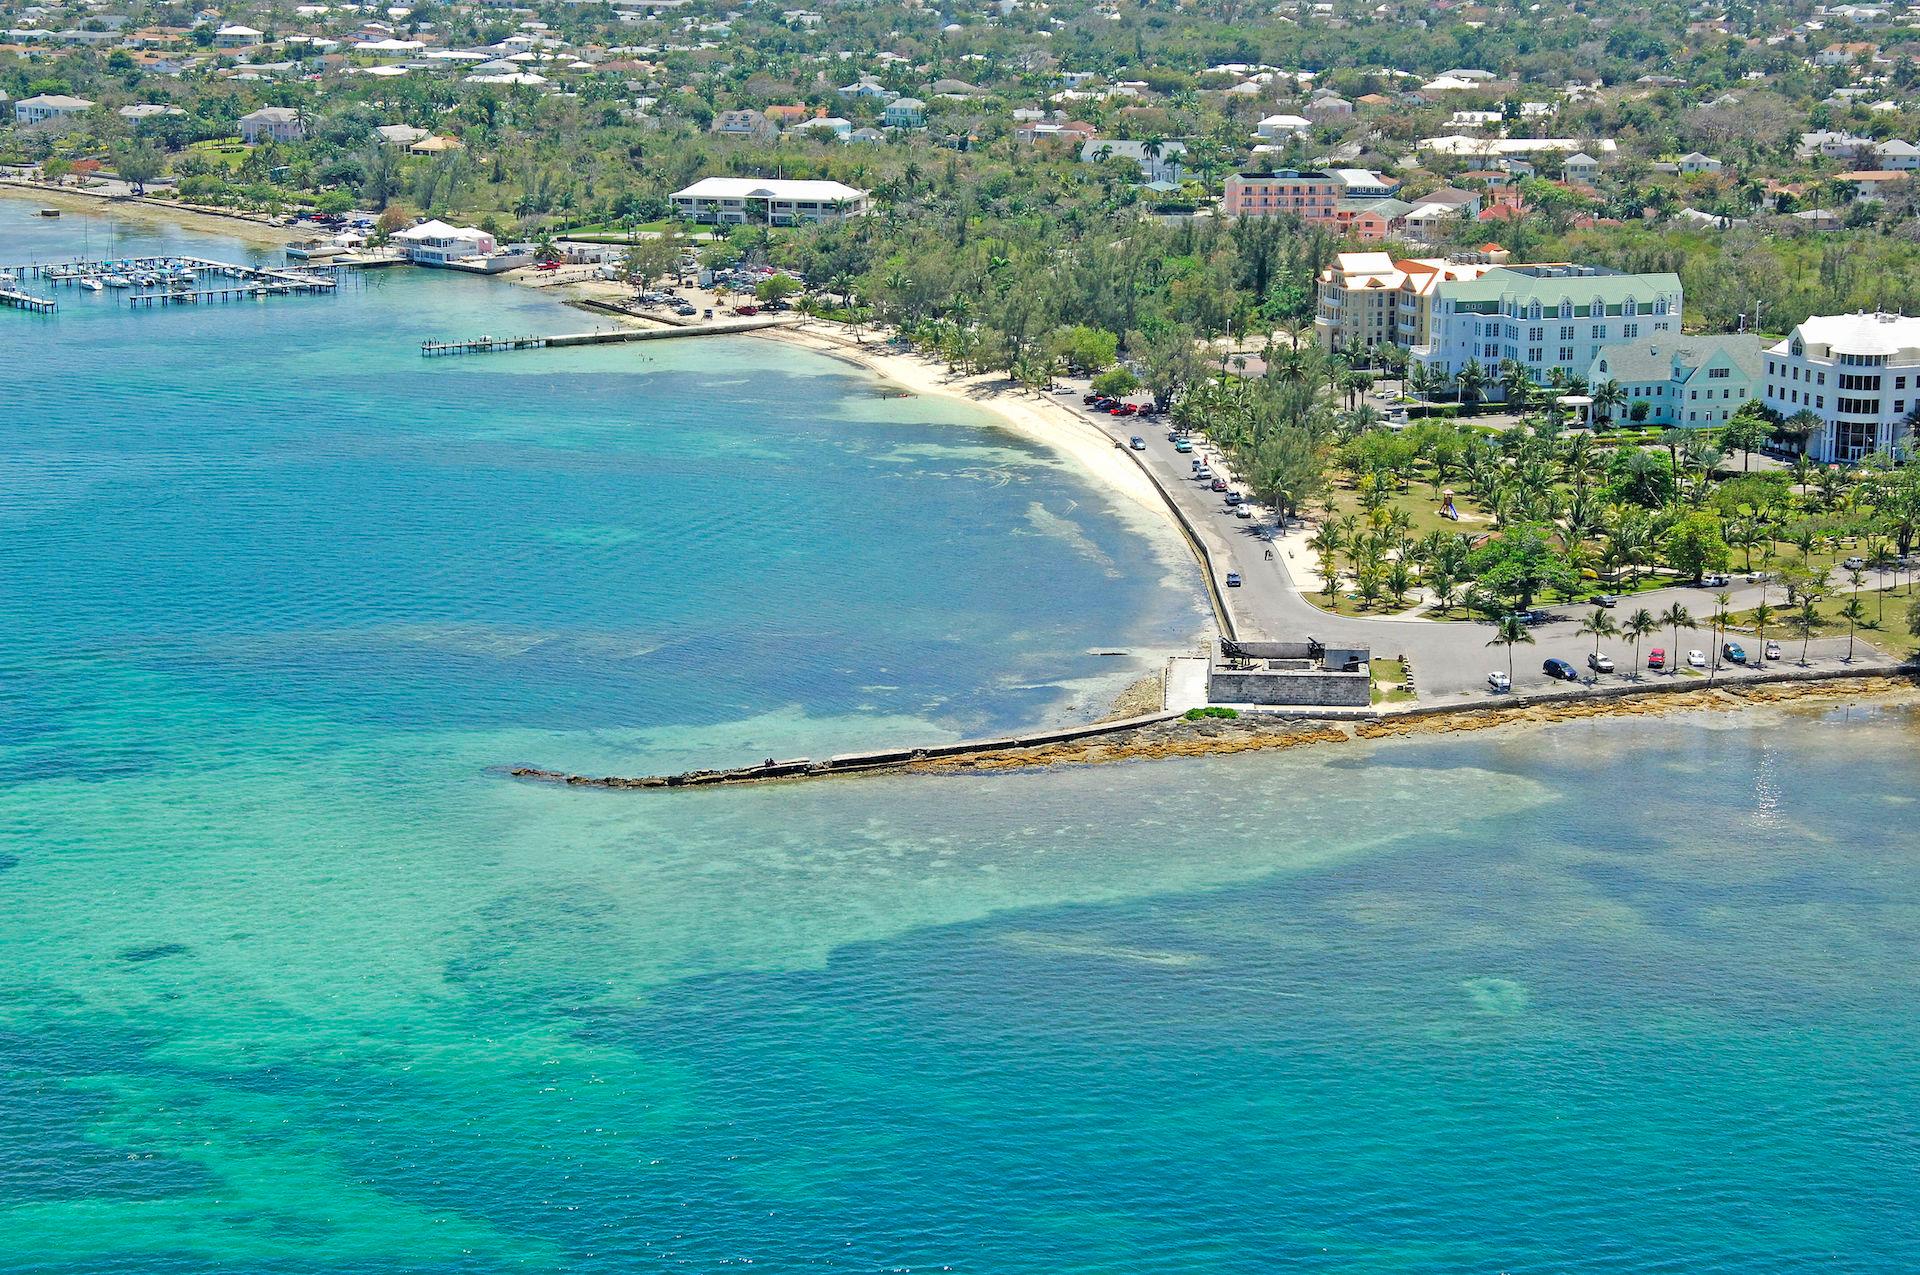 Explore The Bahamian History and Beaches